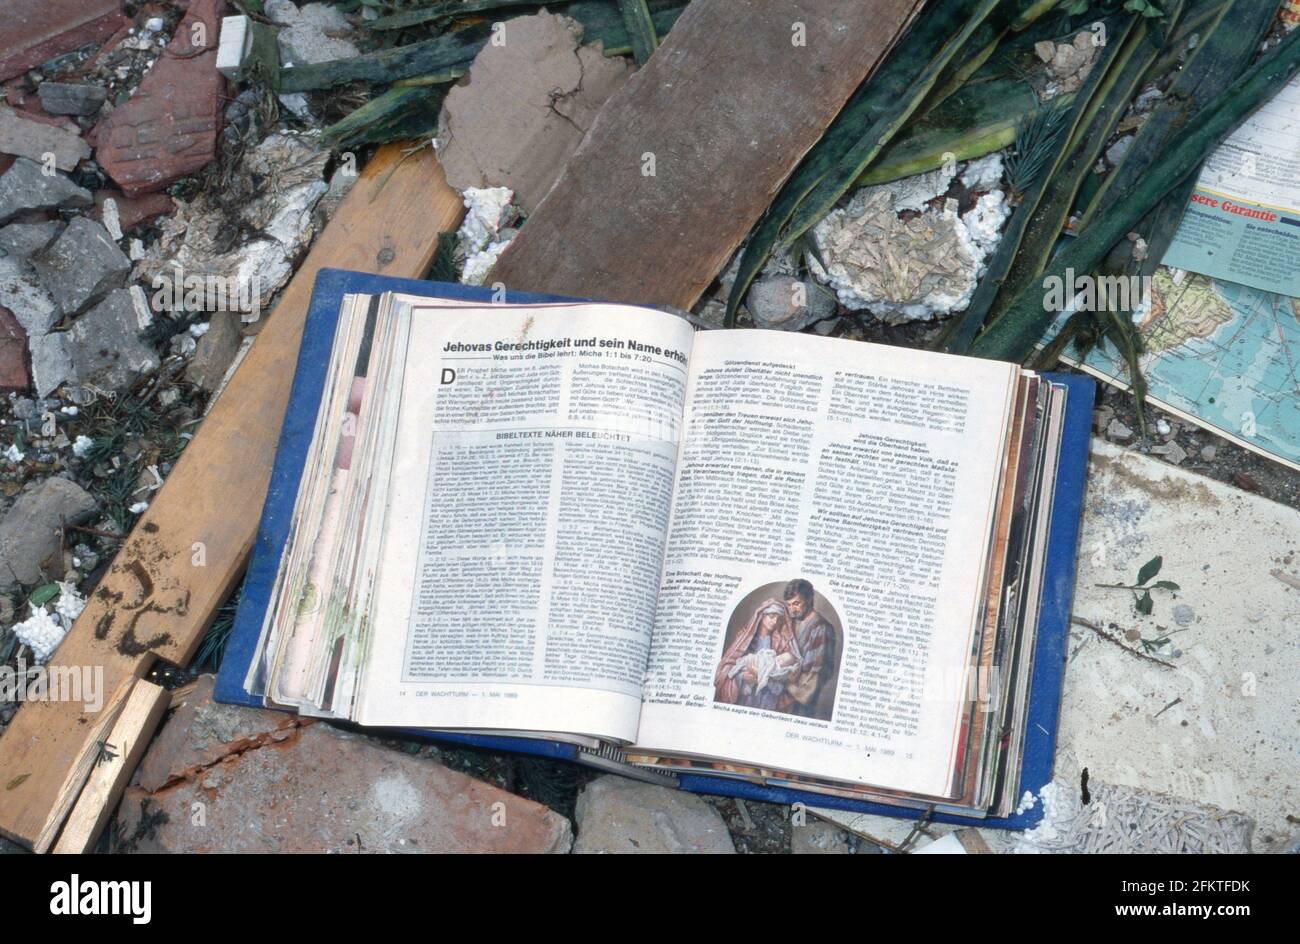 Eine Sammlung der Zeitschrift 'Der Wachturm' von den Zeugen Jehovas findet sich in den Trümmern des bei einer Gasexplosion zerstörten Doppelhauses in Darmstadt, Deutschland 1992. Stock Photo